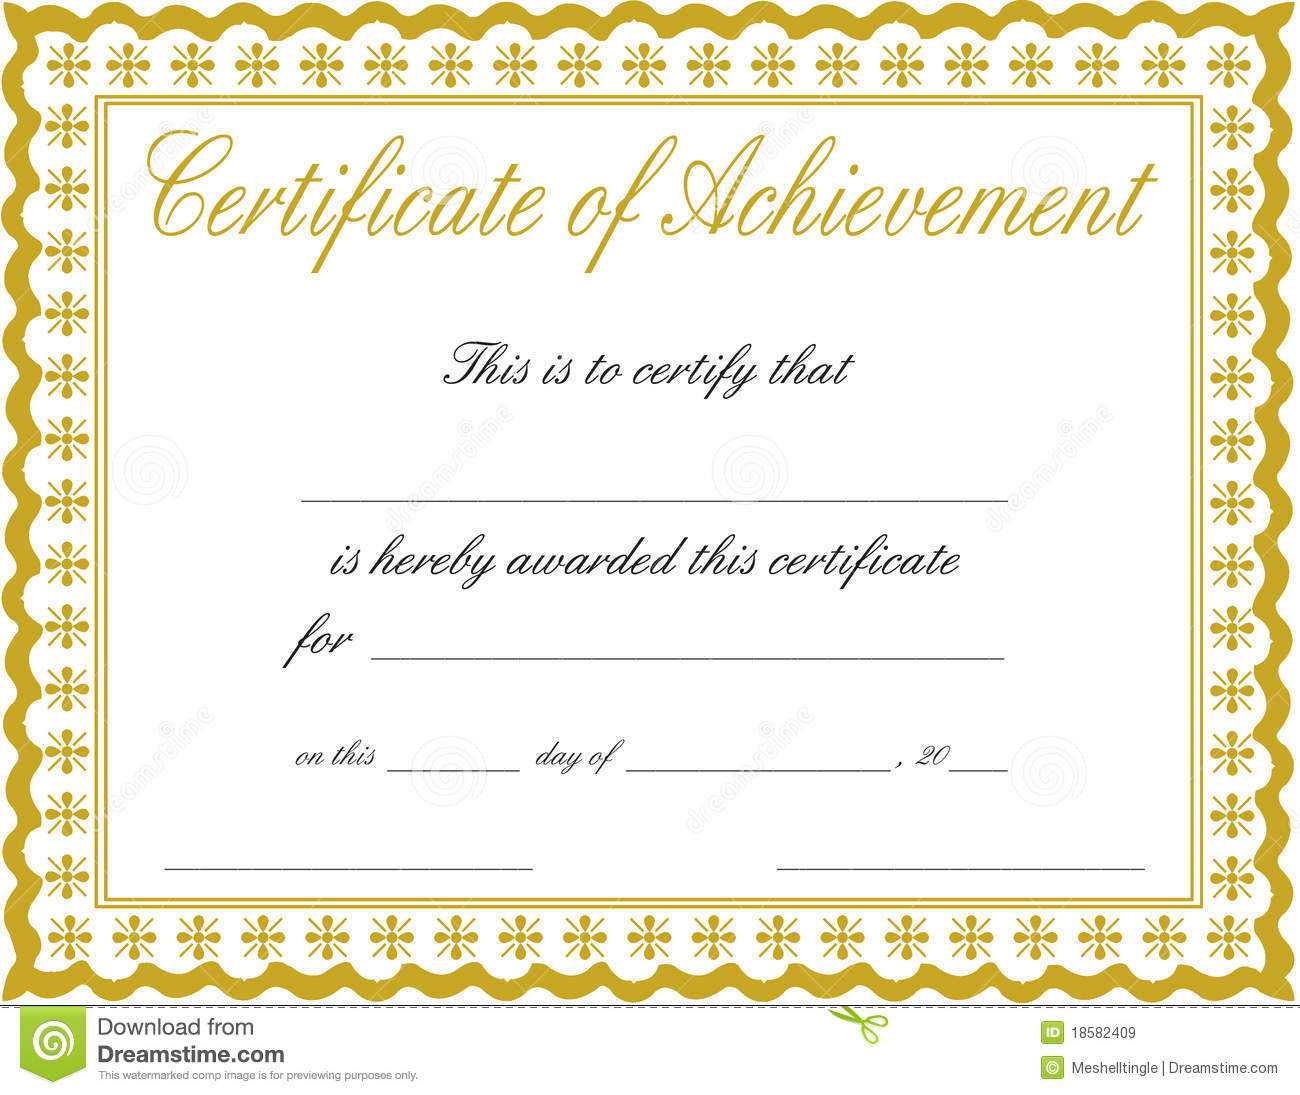 Docx Achievement Certificates Templates Free Certificate Of With Regard To Blank Certificate Of Achievement Template